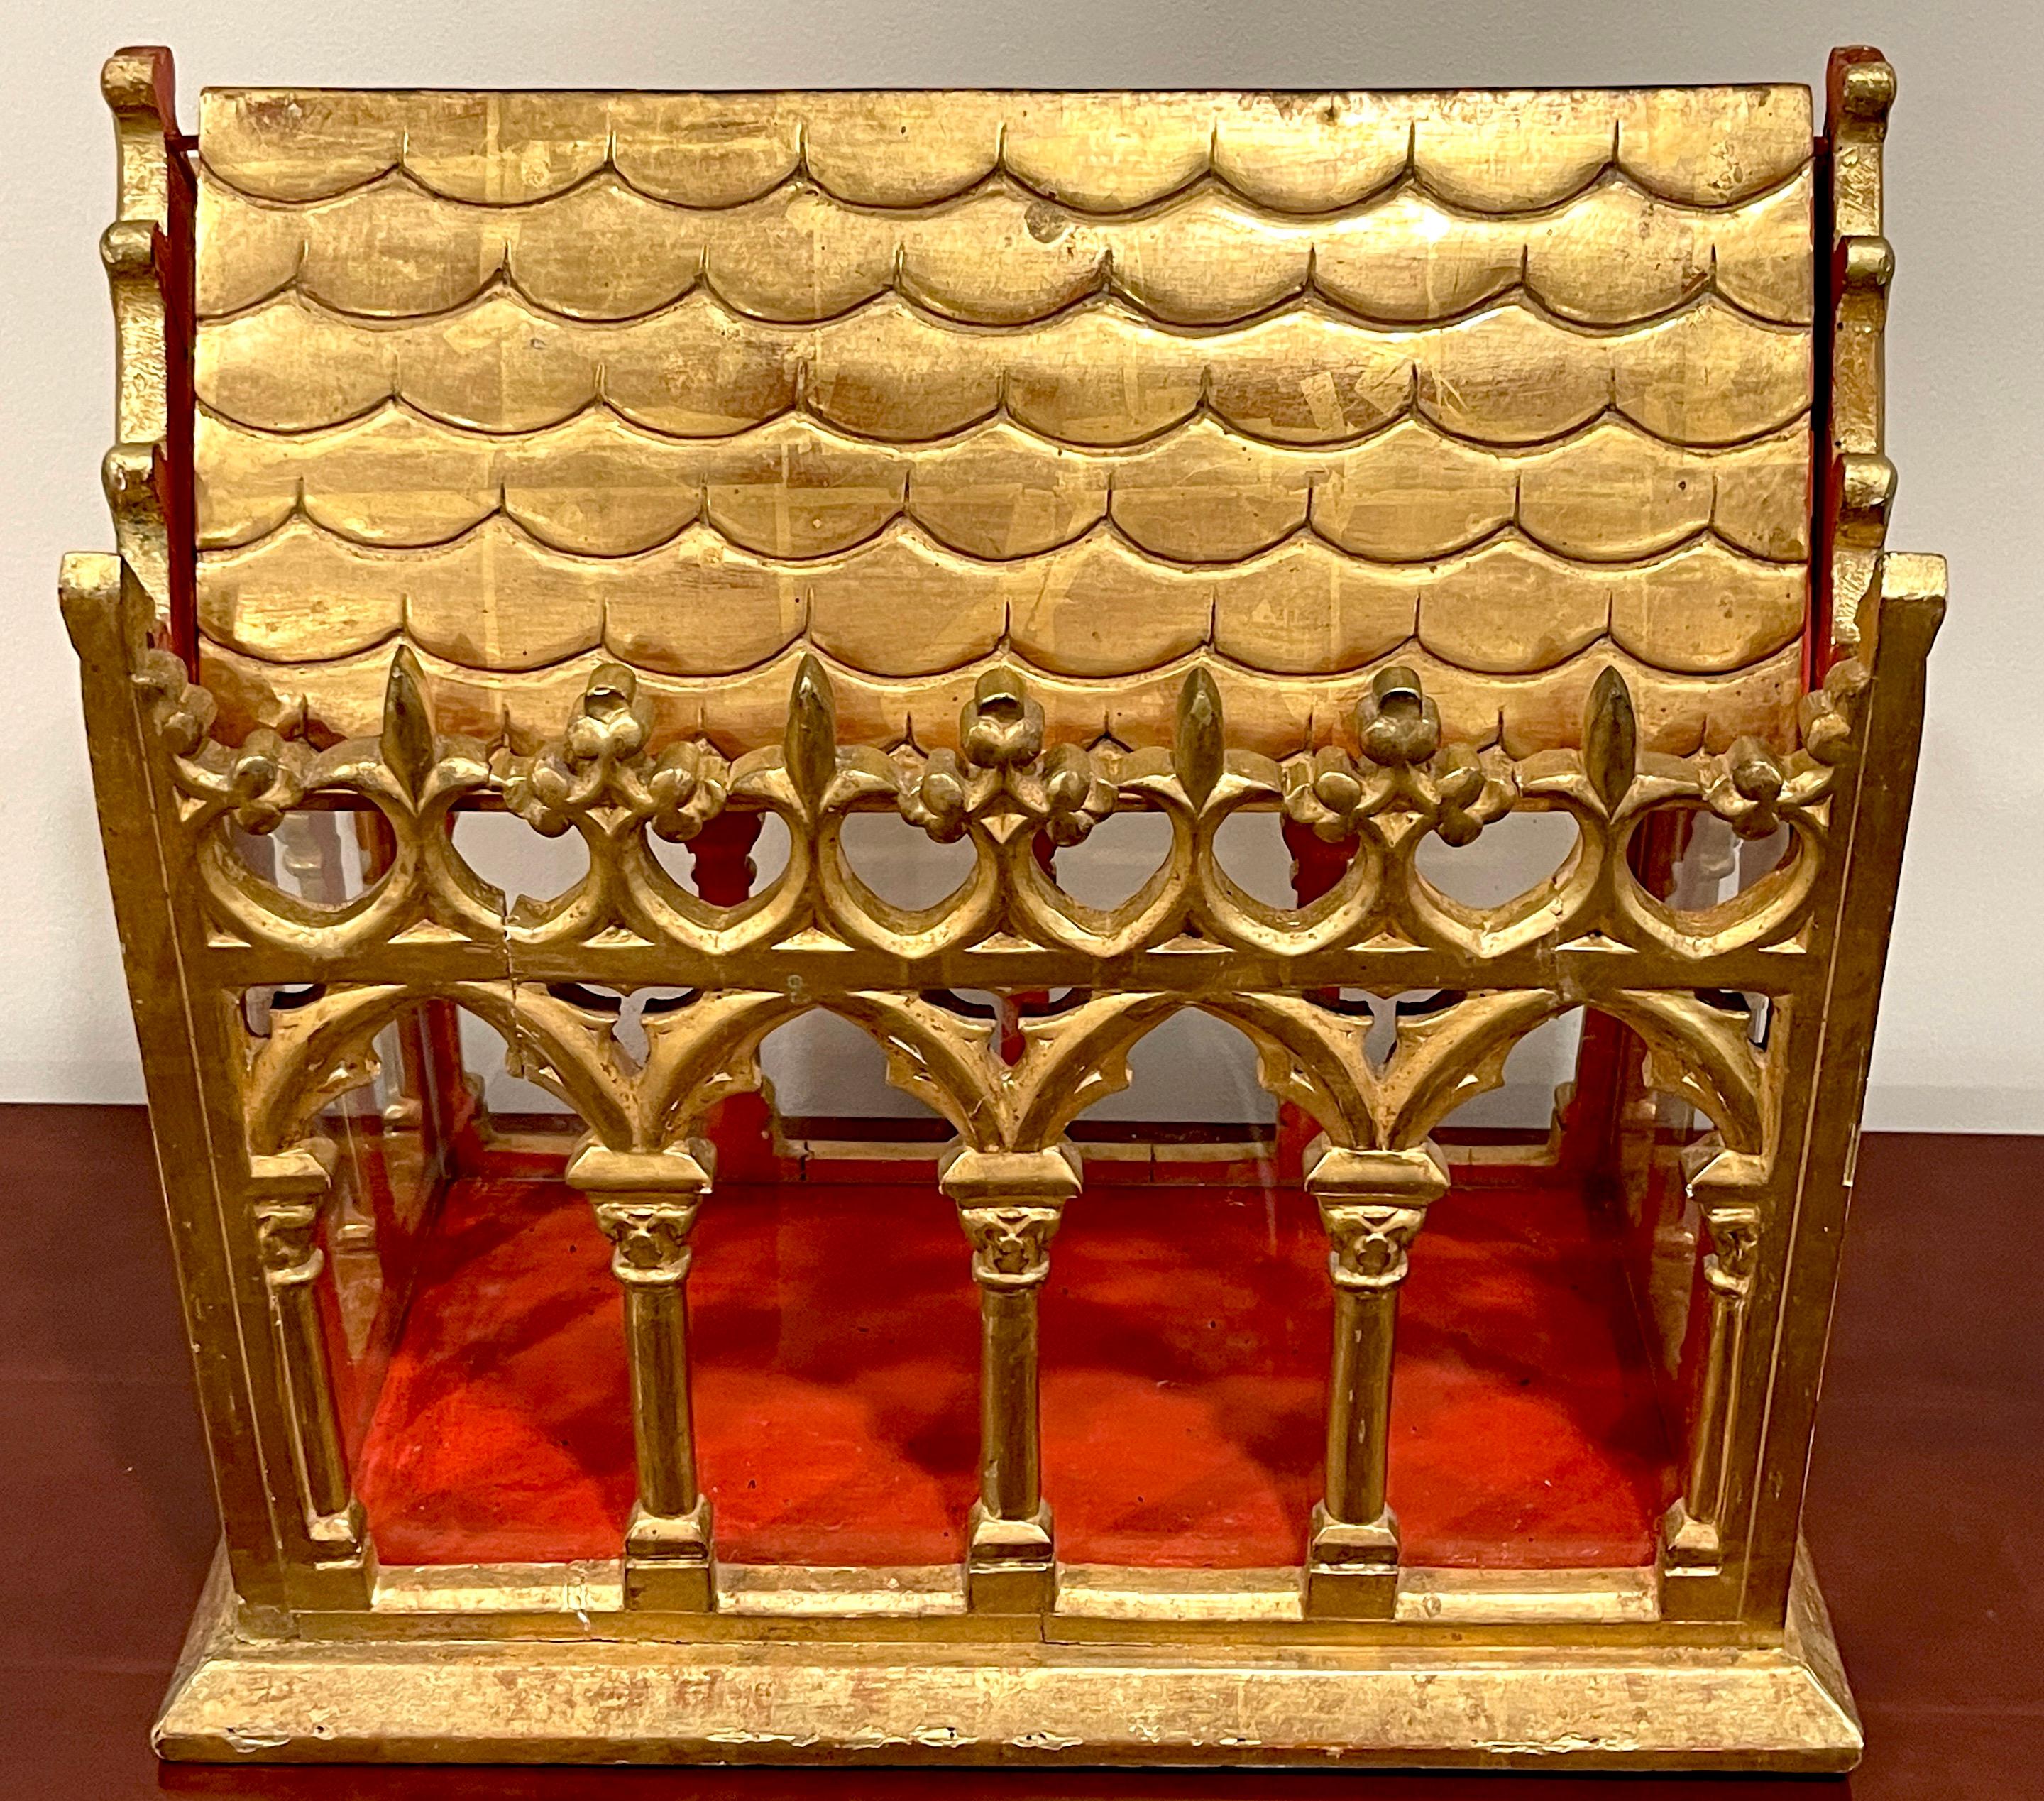 reliquaire / vitrine en bois doré et verre de style cathédrale gothique français du 19ème siècle 
France, milieu du XIXe siècle.

Un reliquaire est un récipient destiné à exposer et à conserver en sécurité des reliques sacrées. Les reliques